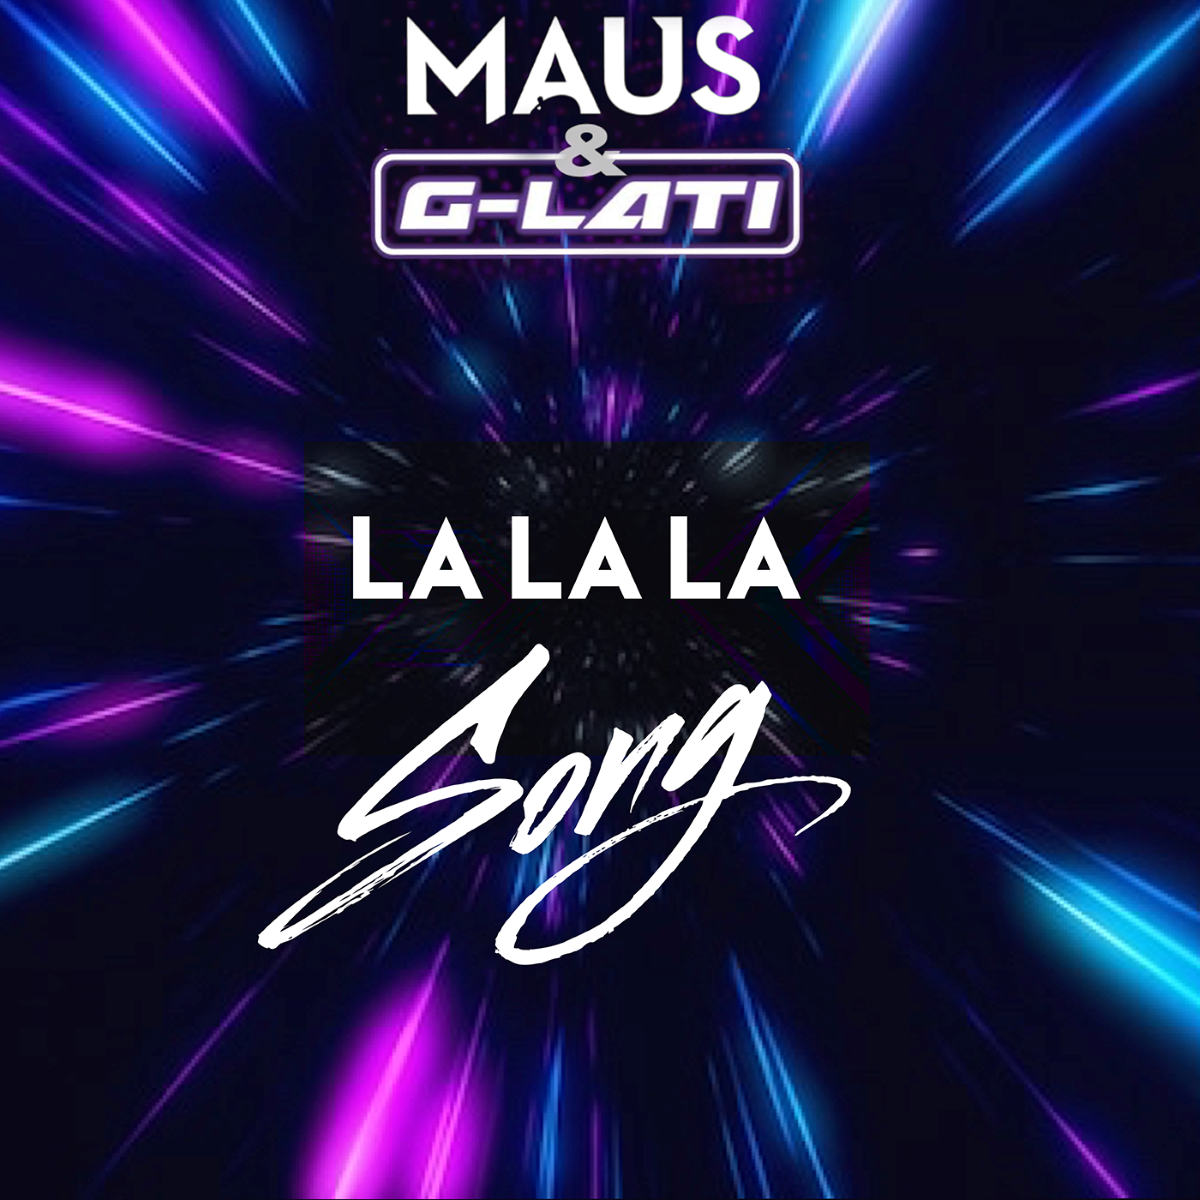 MAUS & G-LATI – La La La Song coverart1400